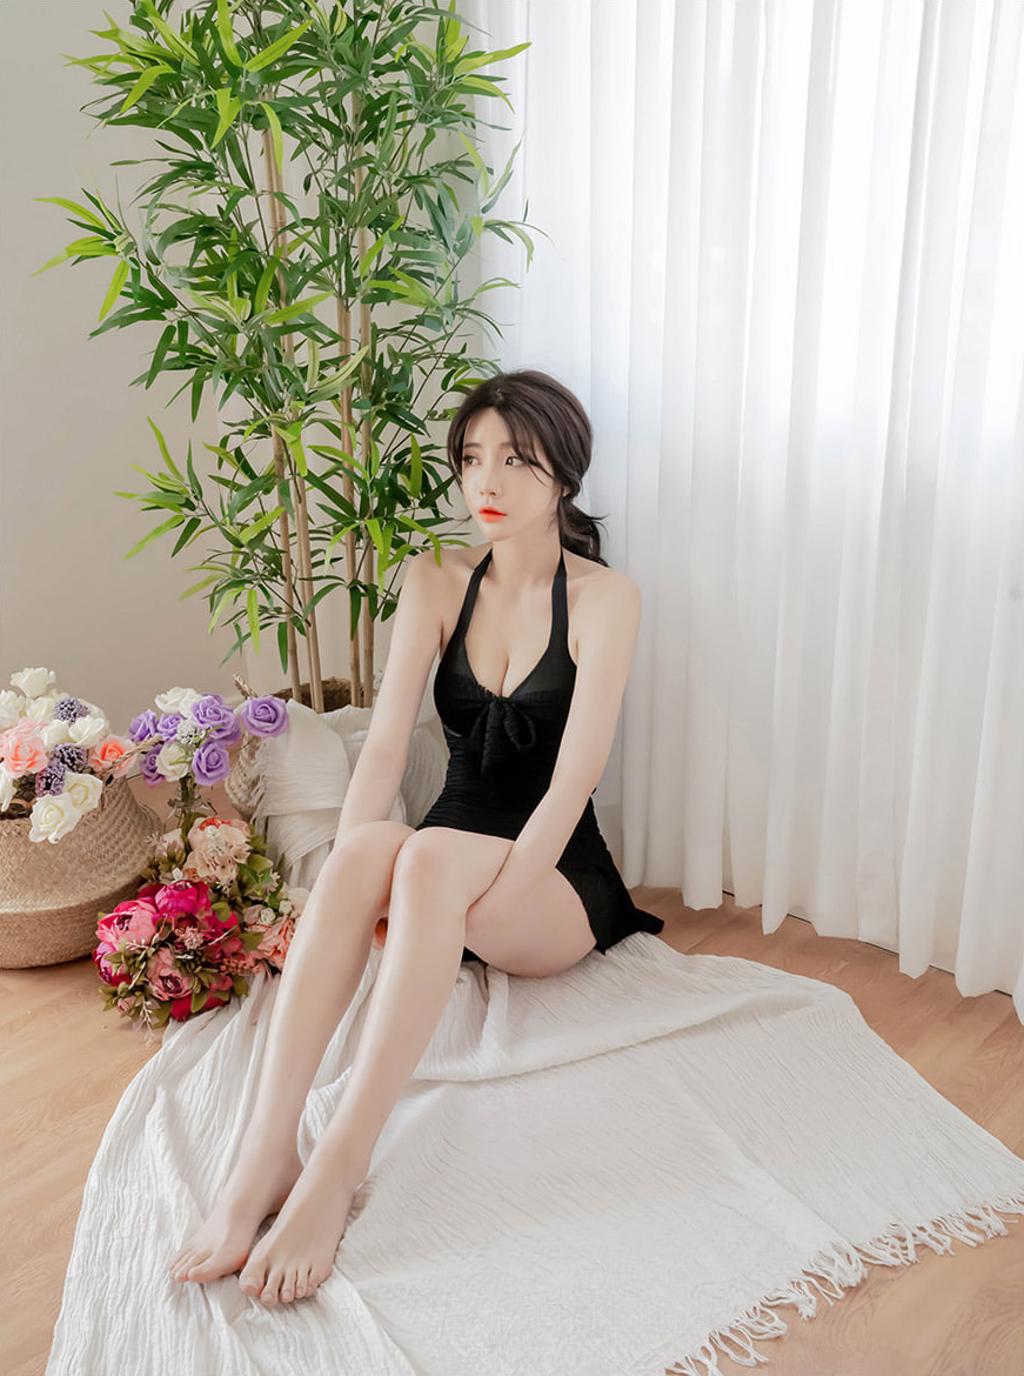 韩国M女模特.韩国美女模特写真集.Thor009